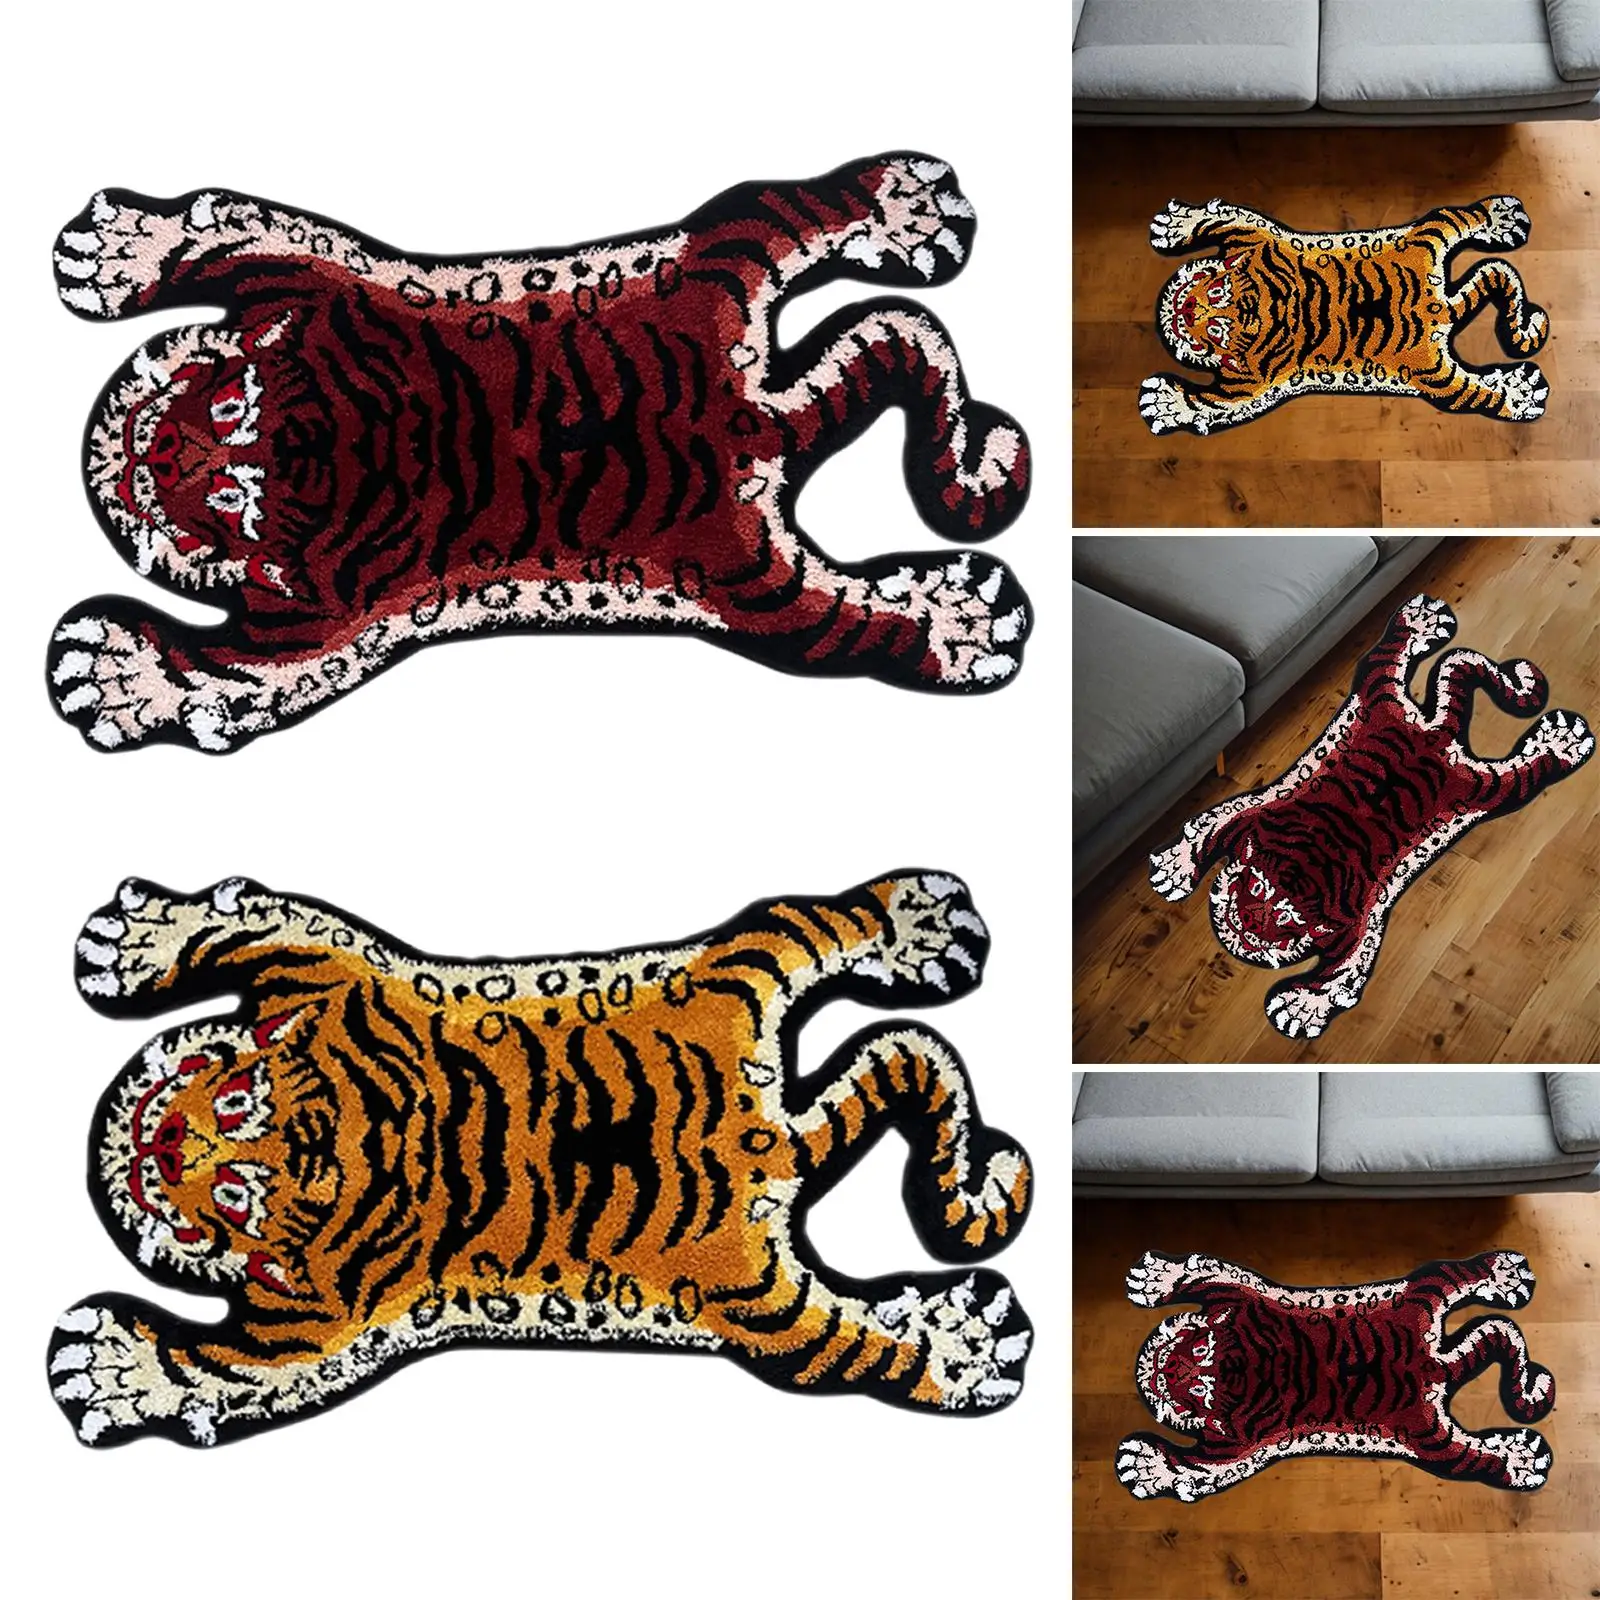 Tiger Carpet Absorbent Non-Slip Animal Shape Carpet for Kids Room